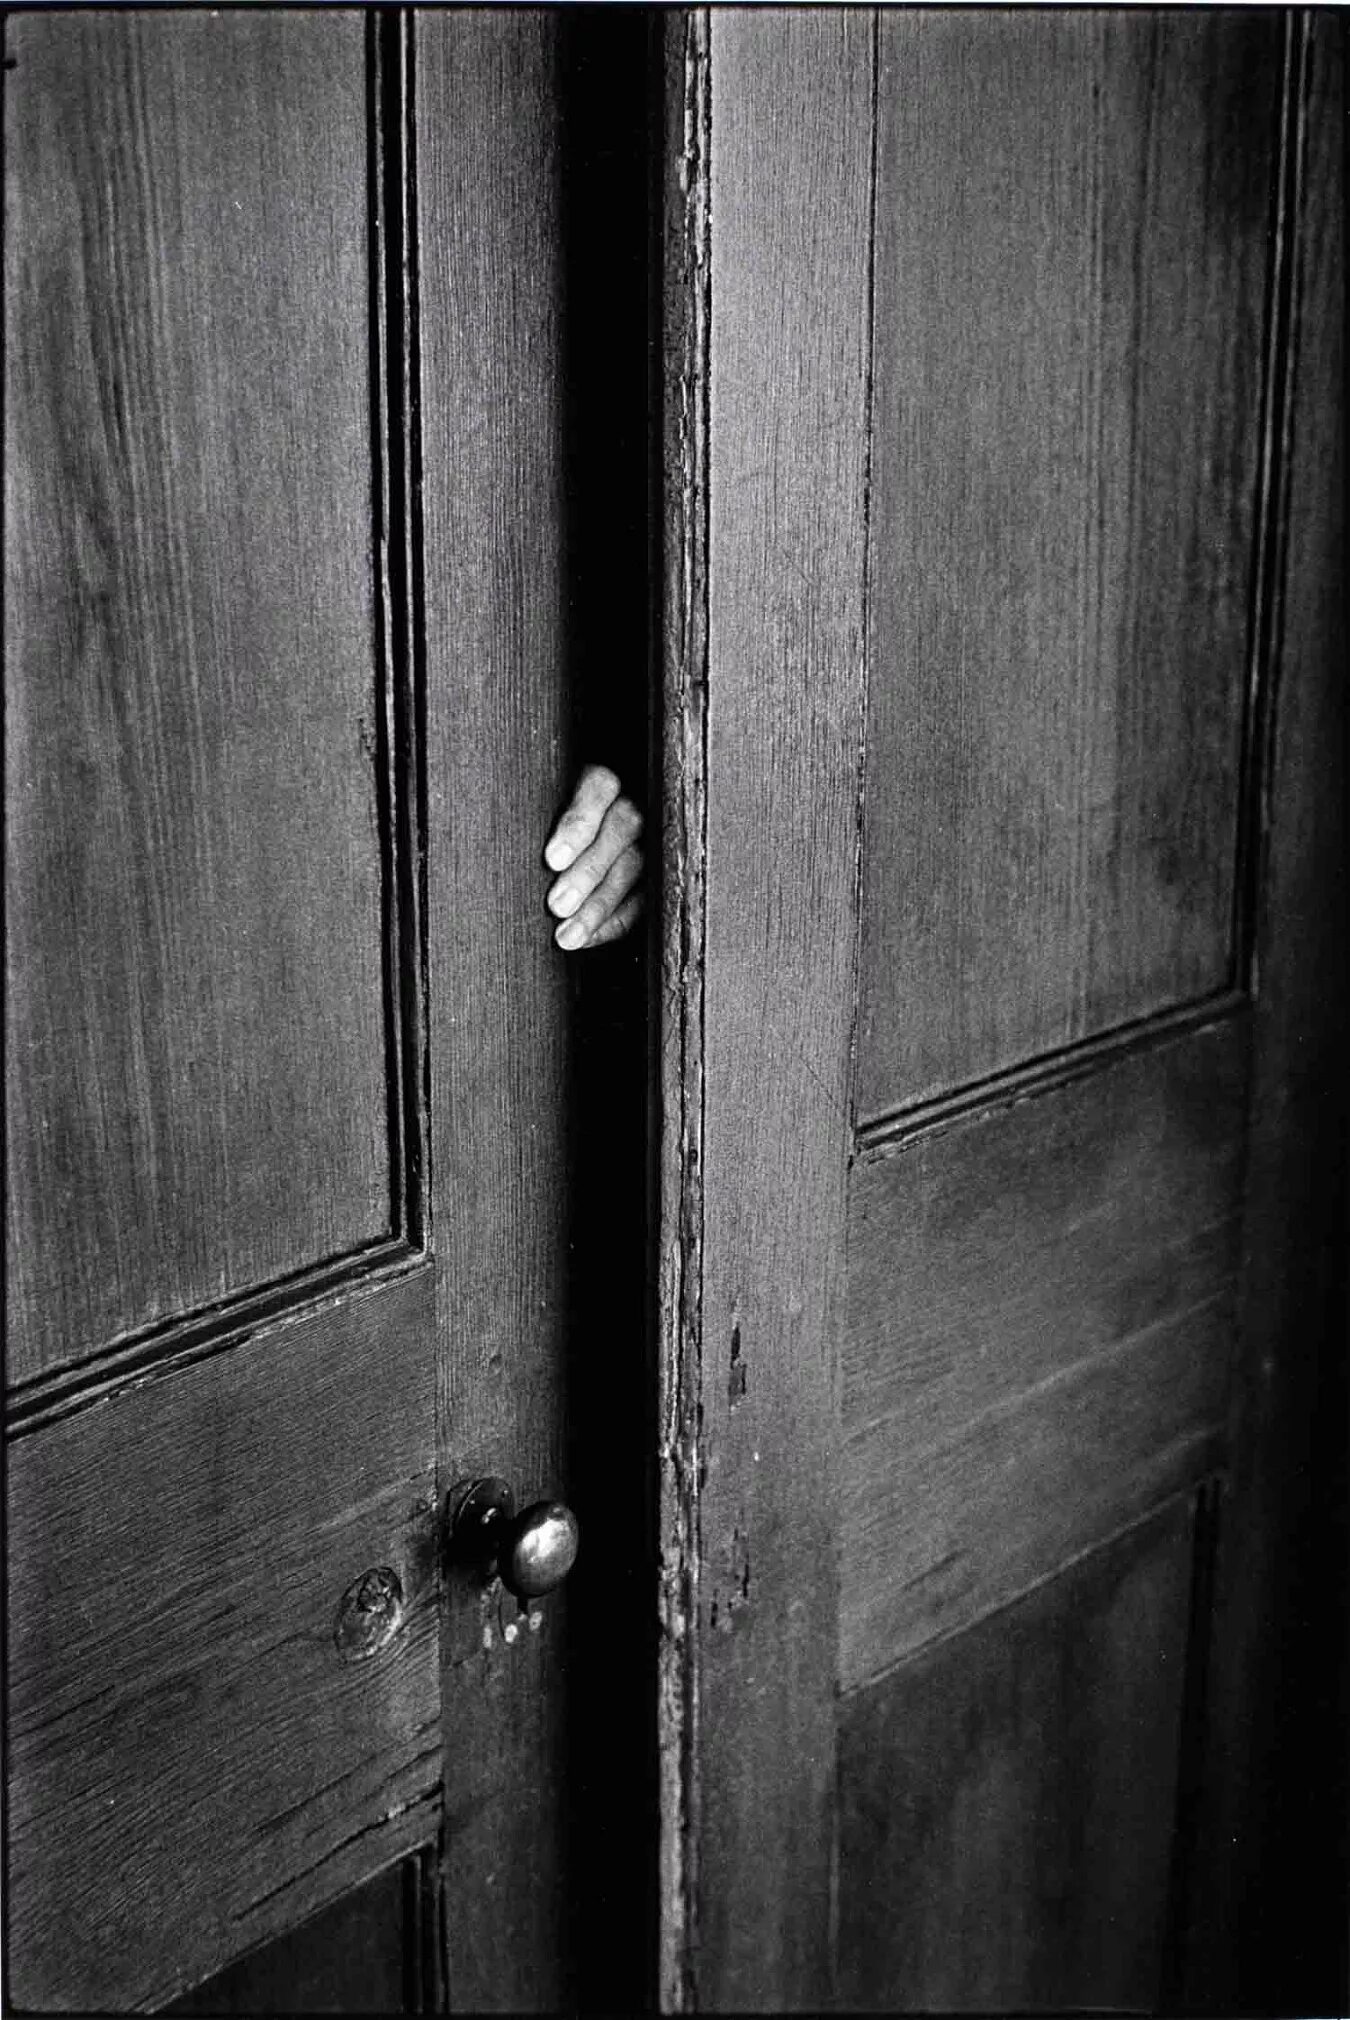 Запирайте дверь в квартире. Elliott Erwitt 1968. Закрытые двери. Открытая дверь.